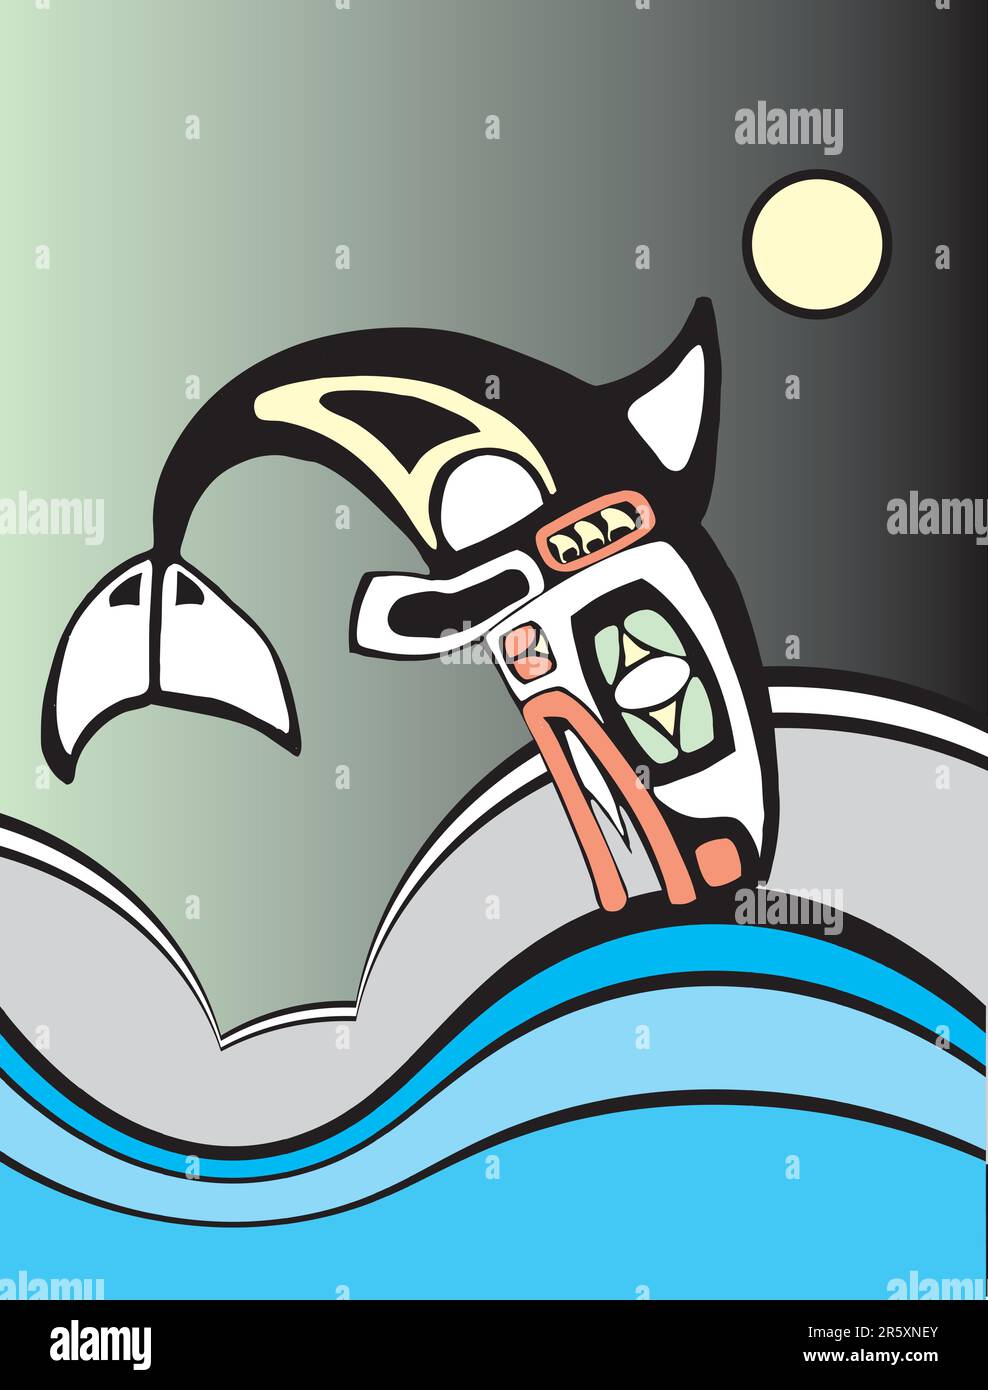 Orque plongée dans les vagues de l'océan dans le style de l'art tribal amérindien de la côte nord-ouest Illustration de Vecteur